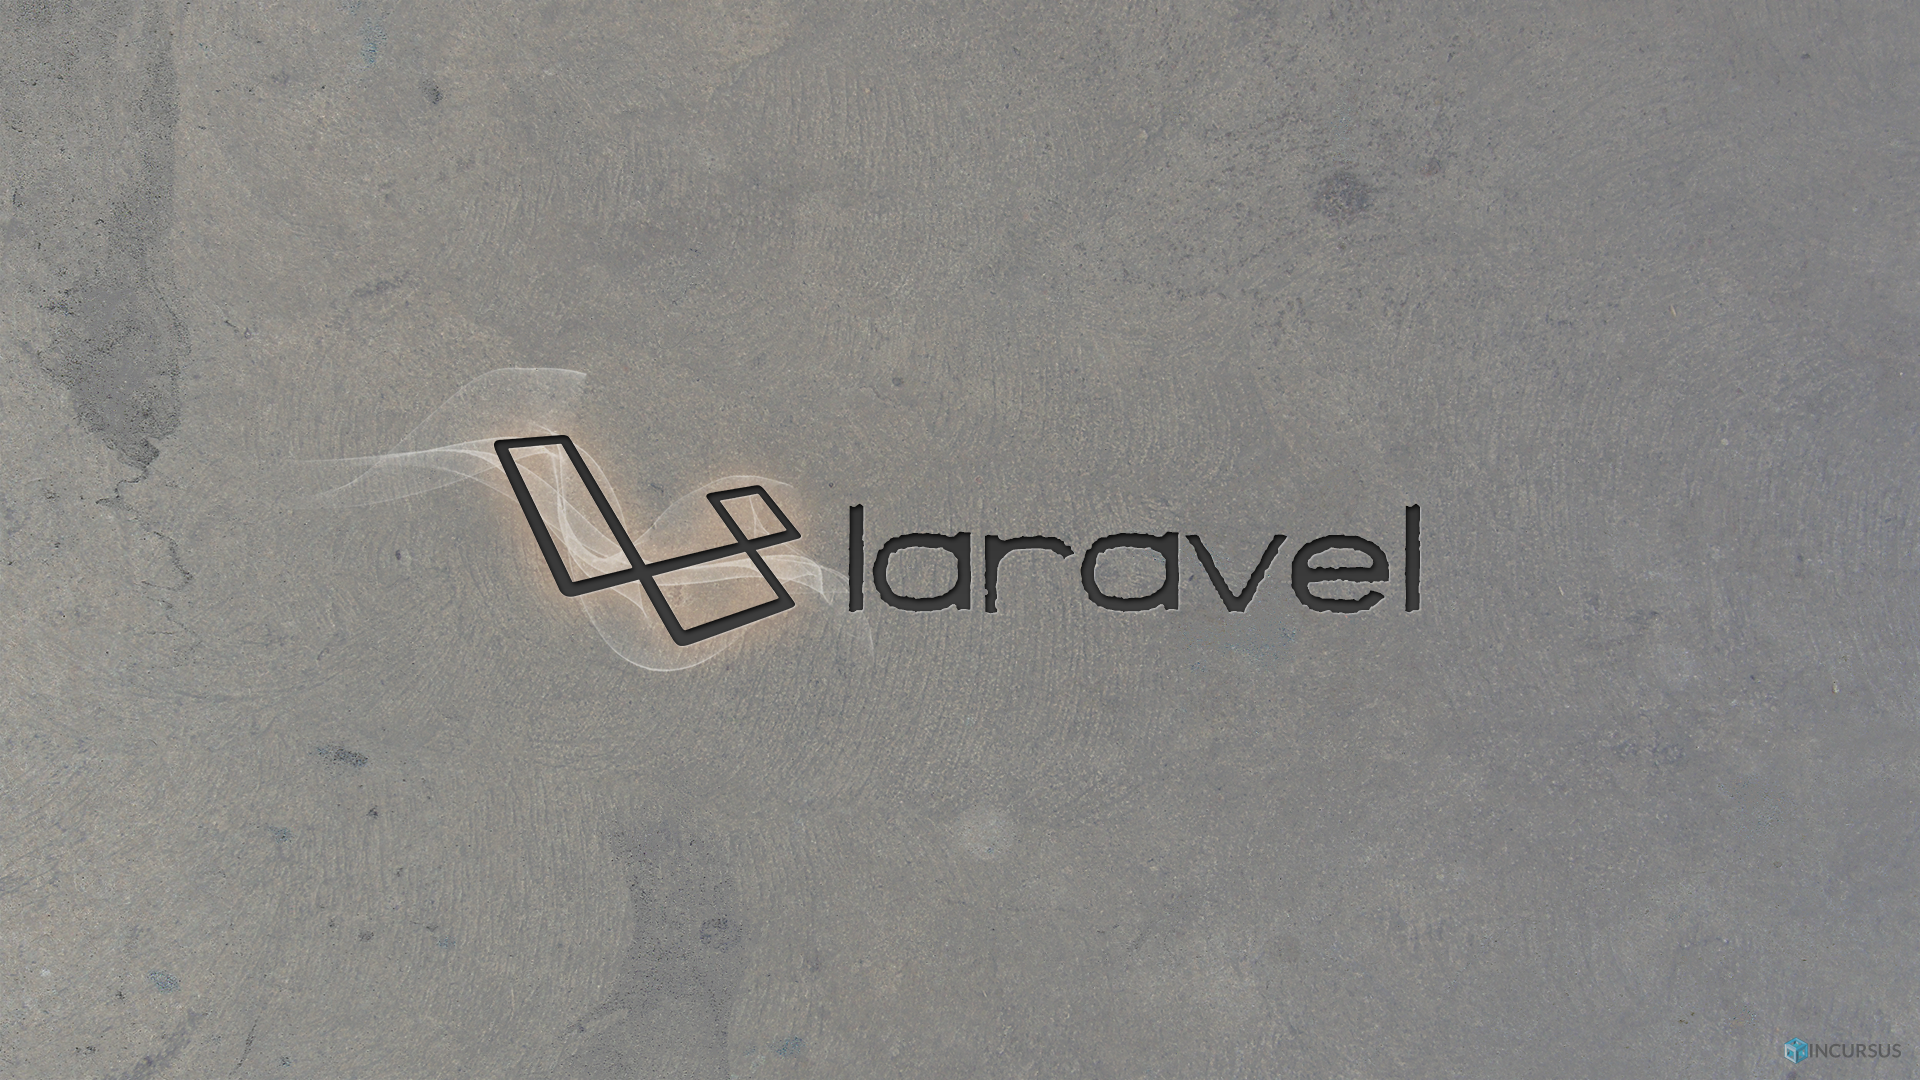 Hình nền Laravel đẹp lung linh đang chờ bạn khám phá! Với độ phân giải cao, bạn sẽ có những trải nghiệm thú vị khi sử dụng máy tính. Hãy đón xem ngay bức tranh ảnh này!